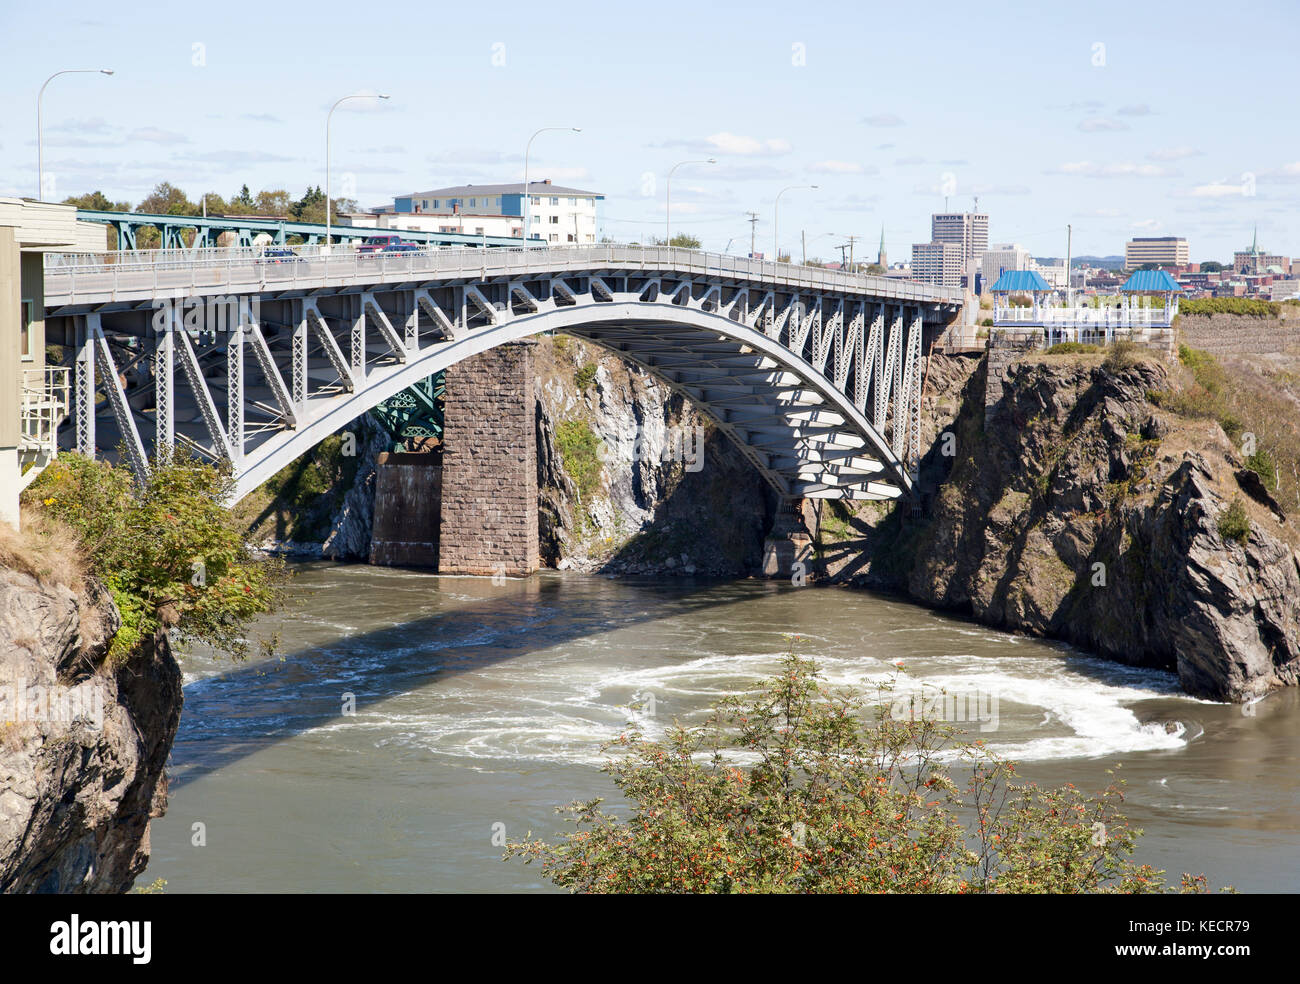 Saint John ville pont sur st. john river qui, en raison de changements de marées extrêmes, c'est présente deux fois par jour (Nouveau-Brunswick, Canada). Banque D'Images